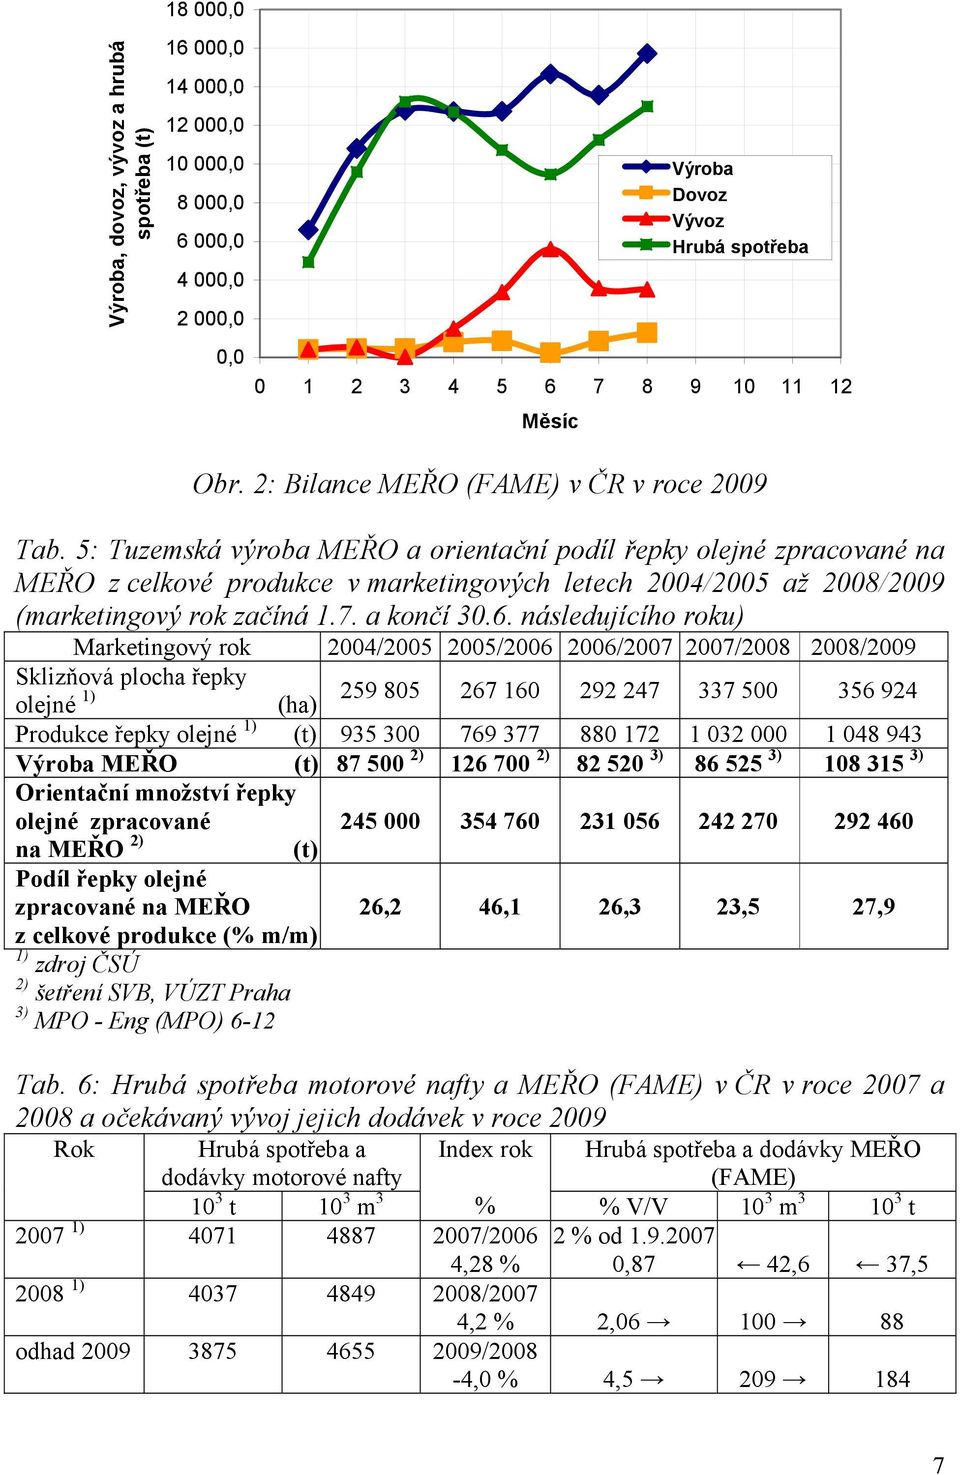 5: Tuzemská výroba MEŘO a orientační podíl řepky olejné zpracované na MEŘO z celkové produkce v marketingových letech 2004/2005 až 2008/2009 (marketingový rok začíná 1.7. a končí 30.6.